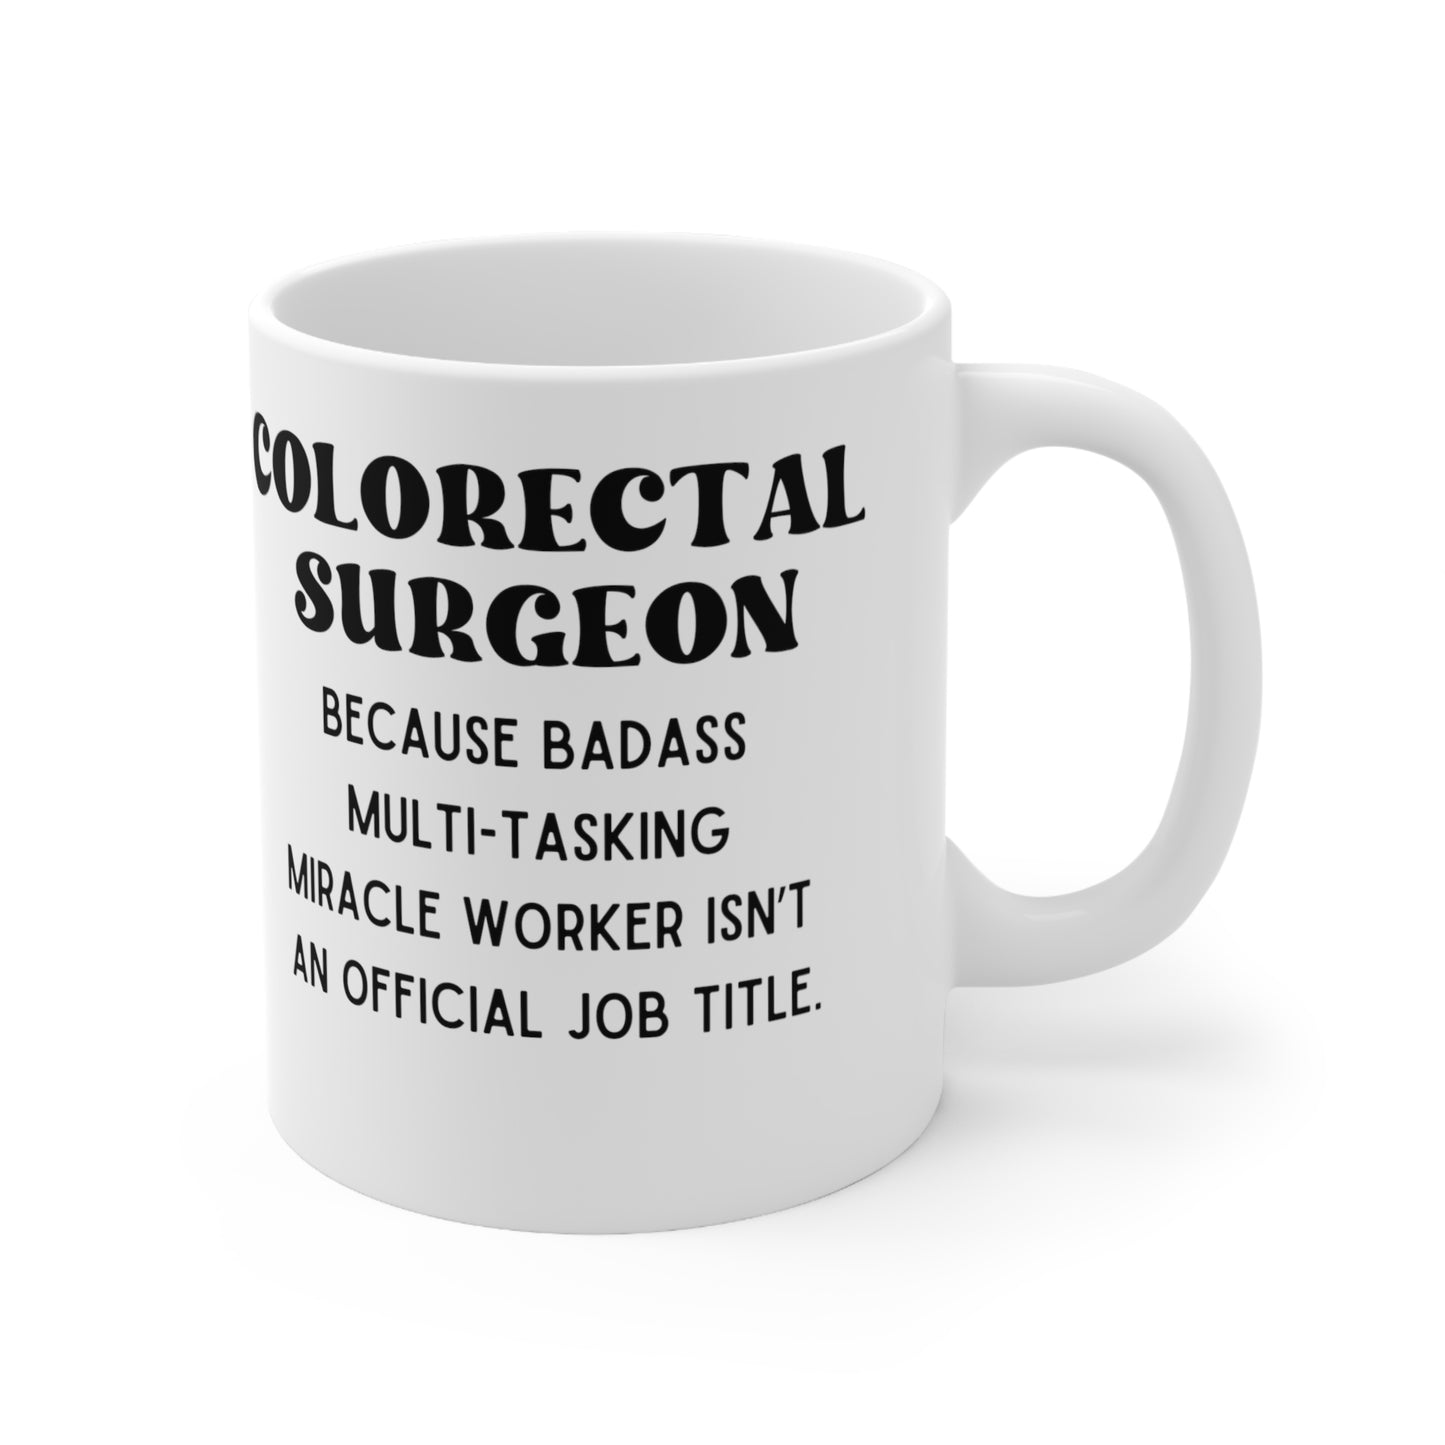 Colorectal Surgeon Mug, Coffee Mug Gift Coffee, Tea, Gifts 11oz